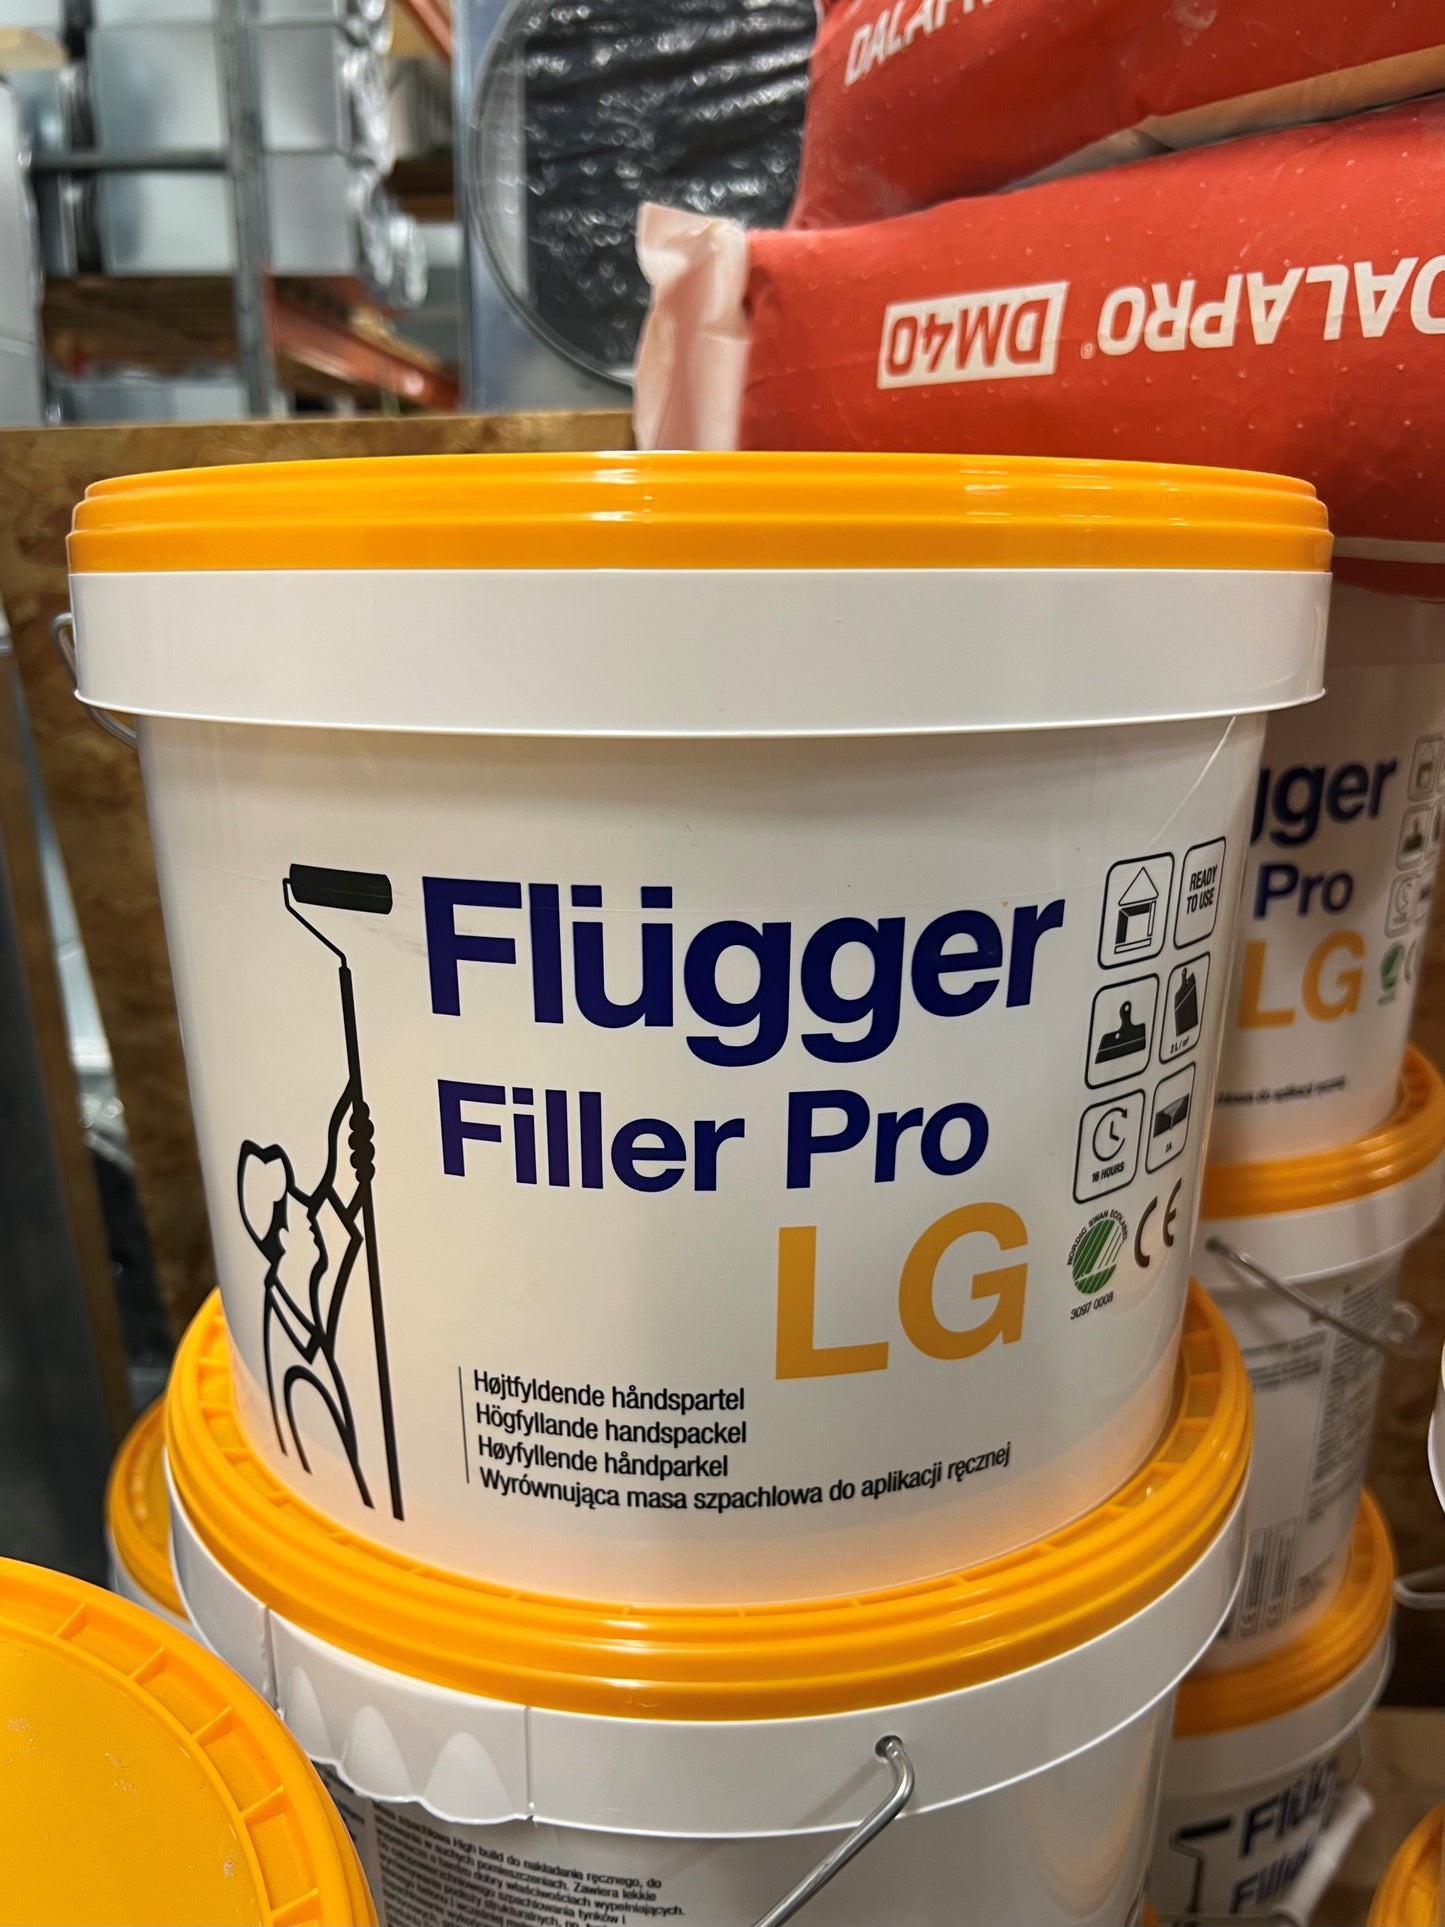 Flugger Filler Pro LG